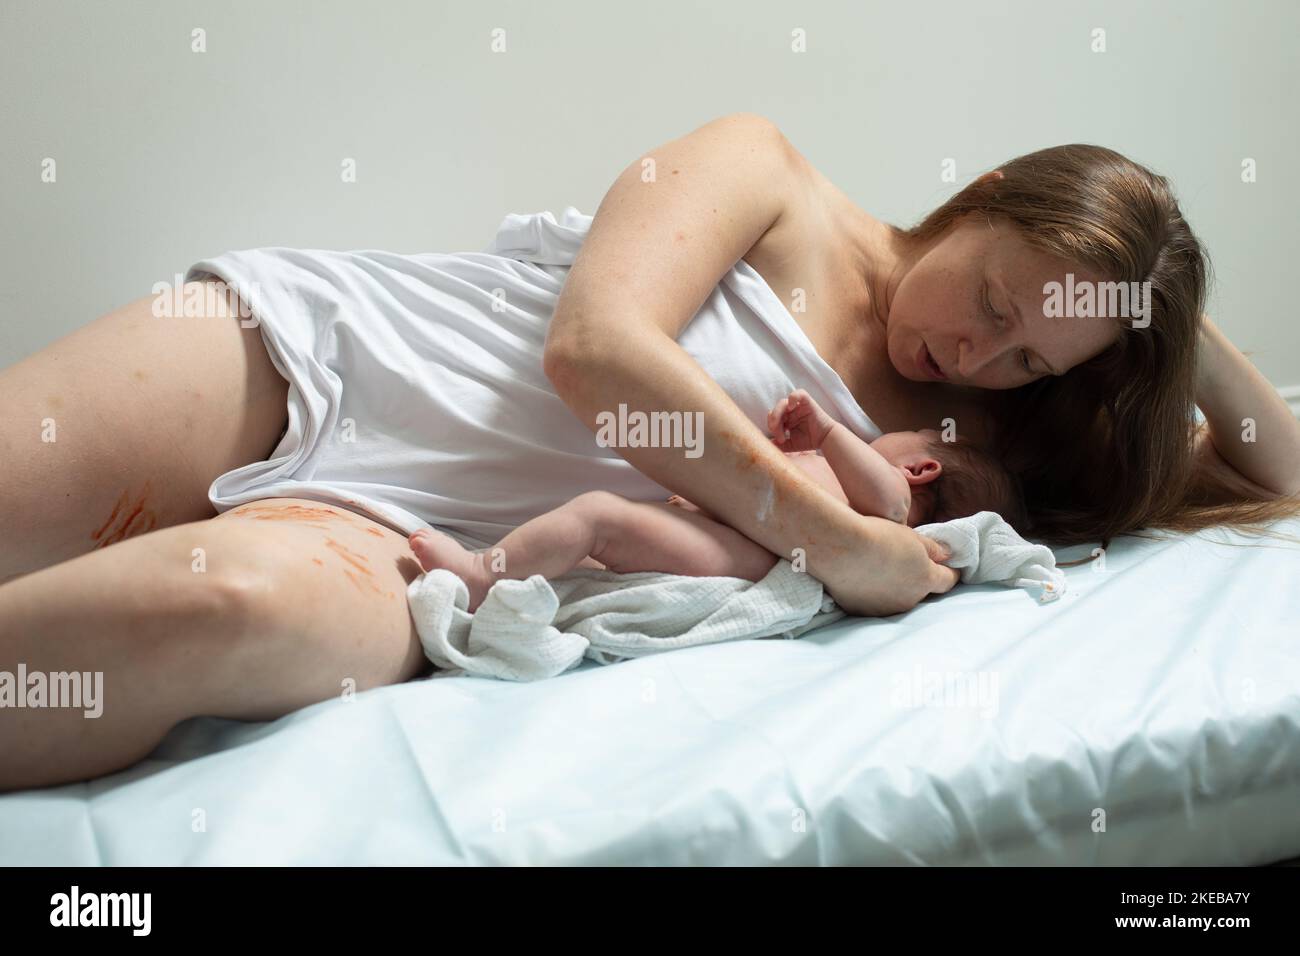 Frau mit neugeborener Baby haben eine Pause Stockfoto